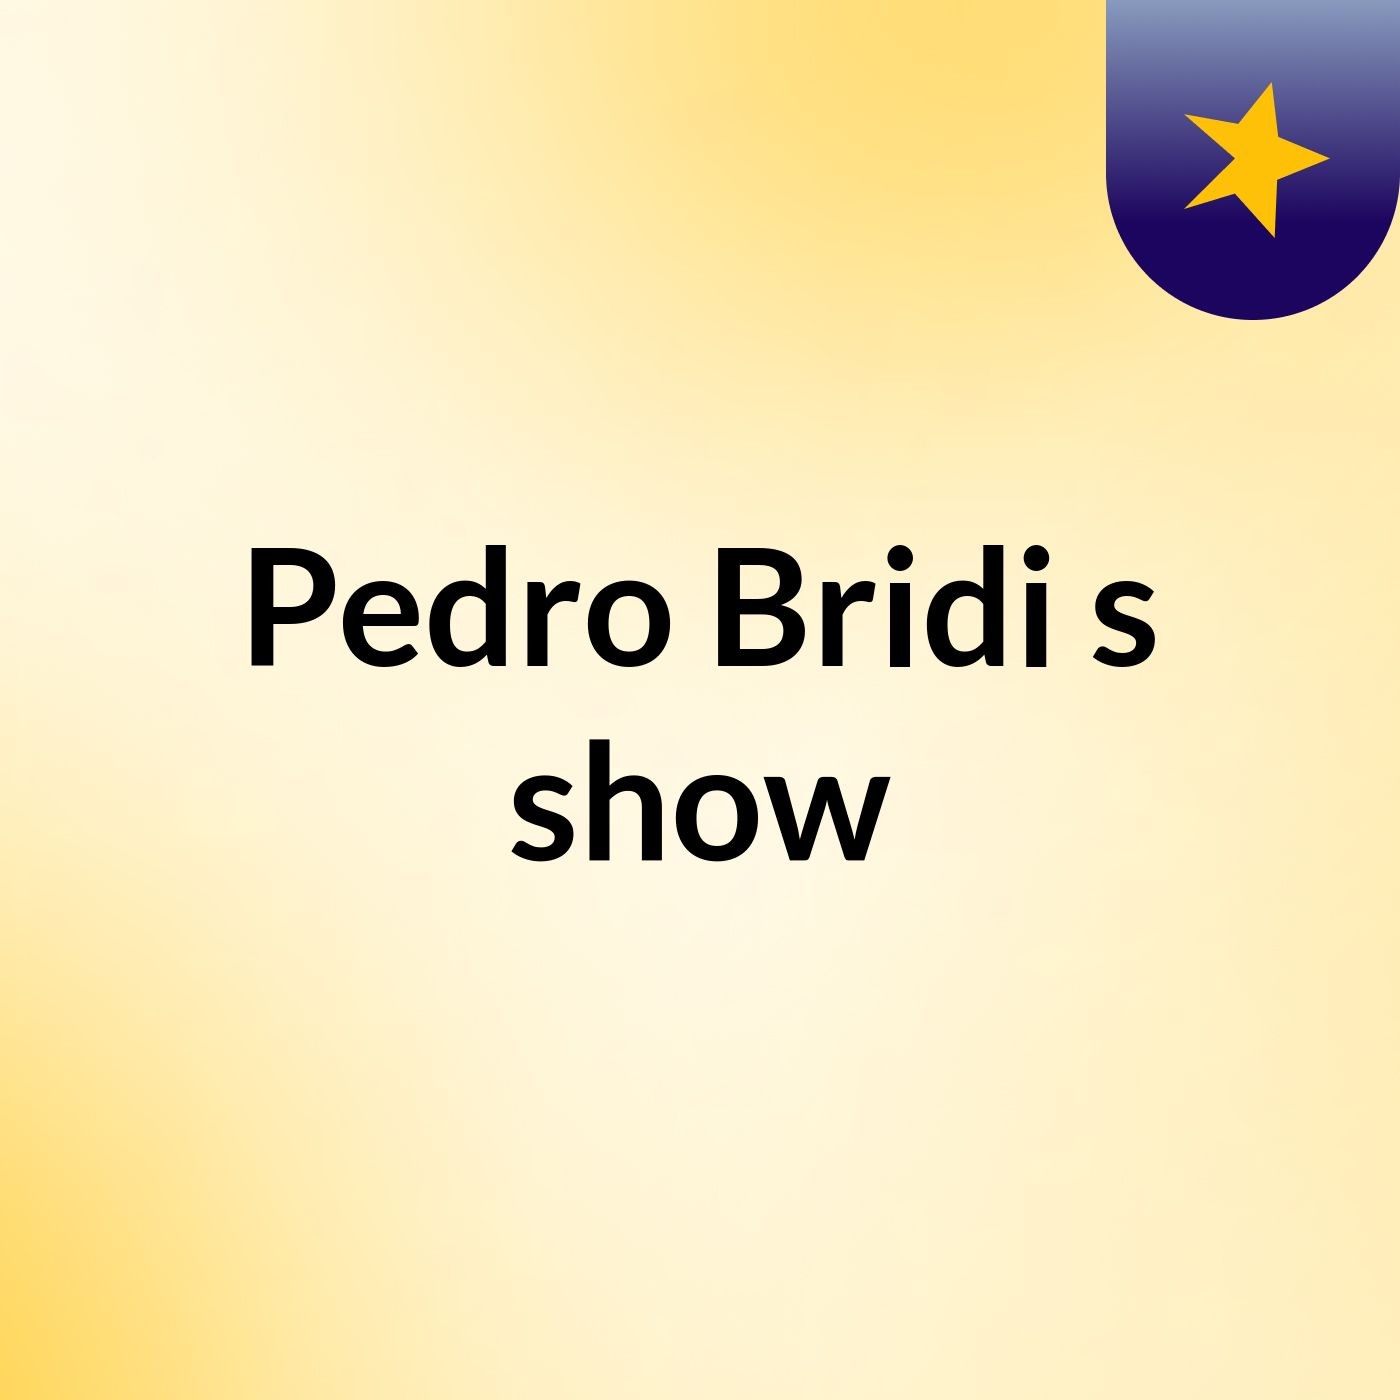 Pedro Bridi's show